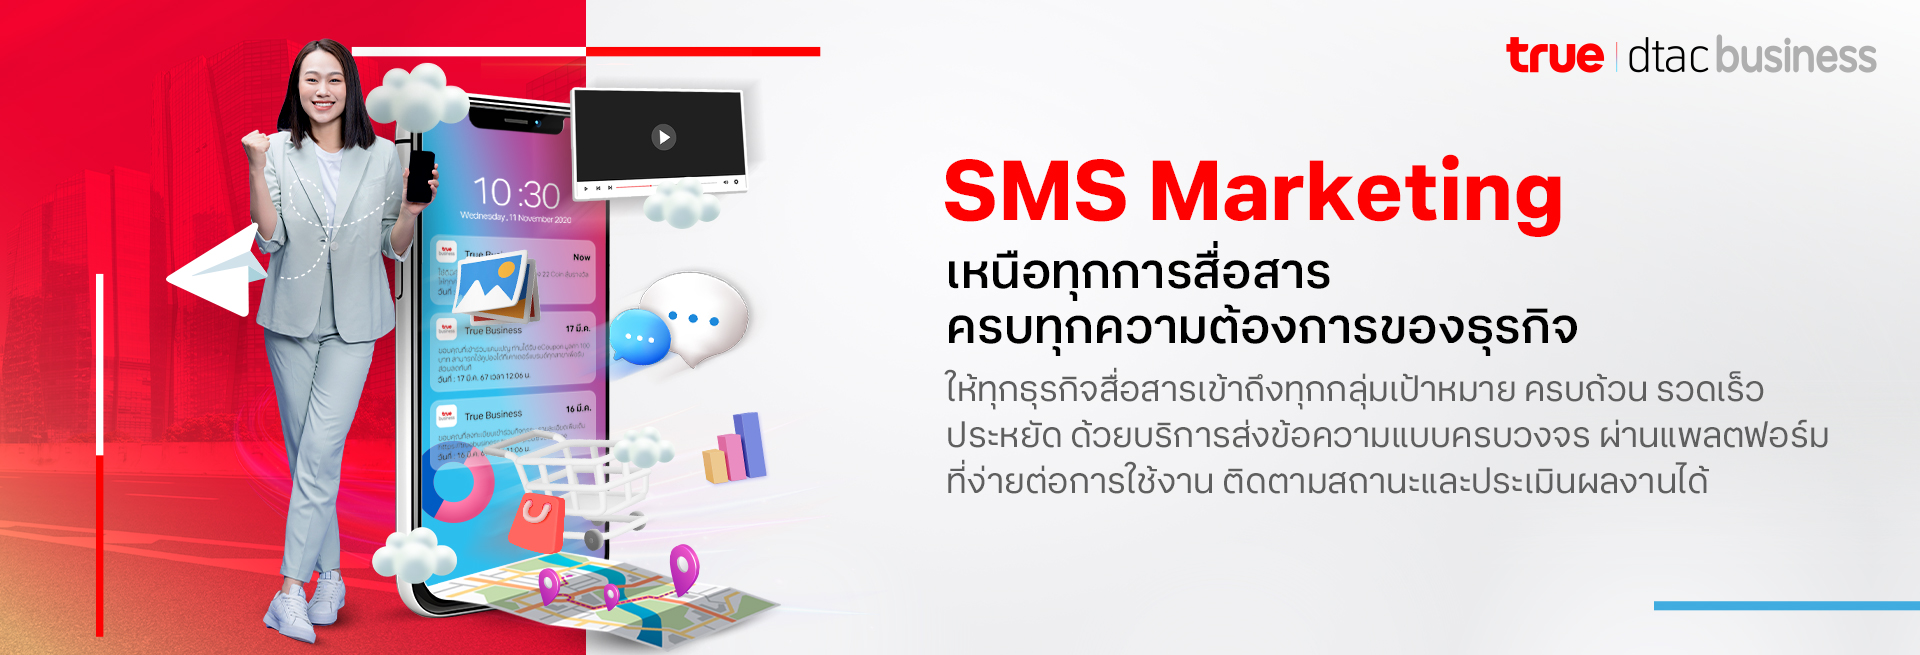 dtac SMS Marketing